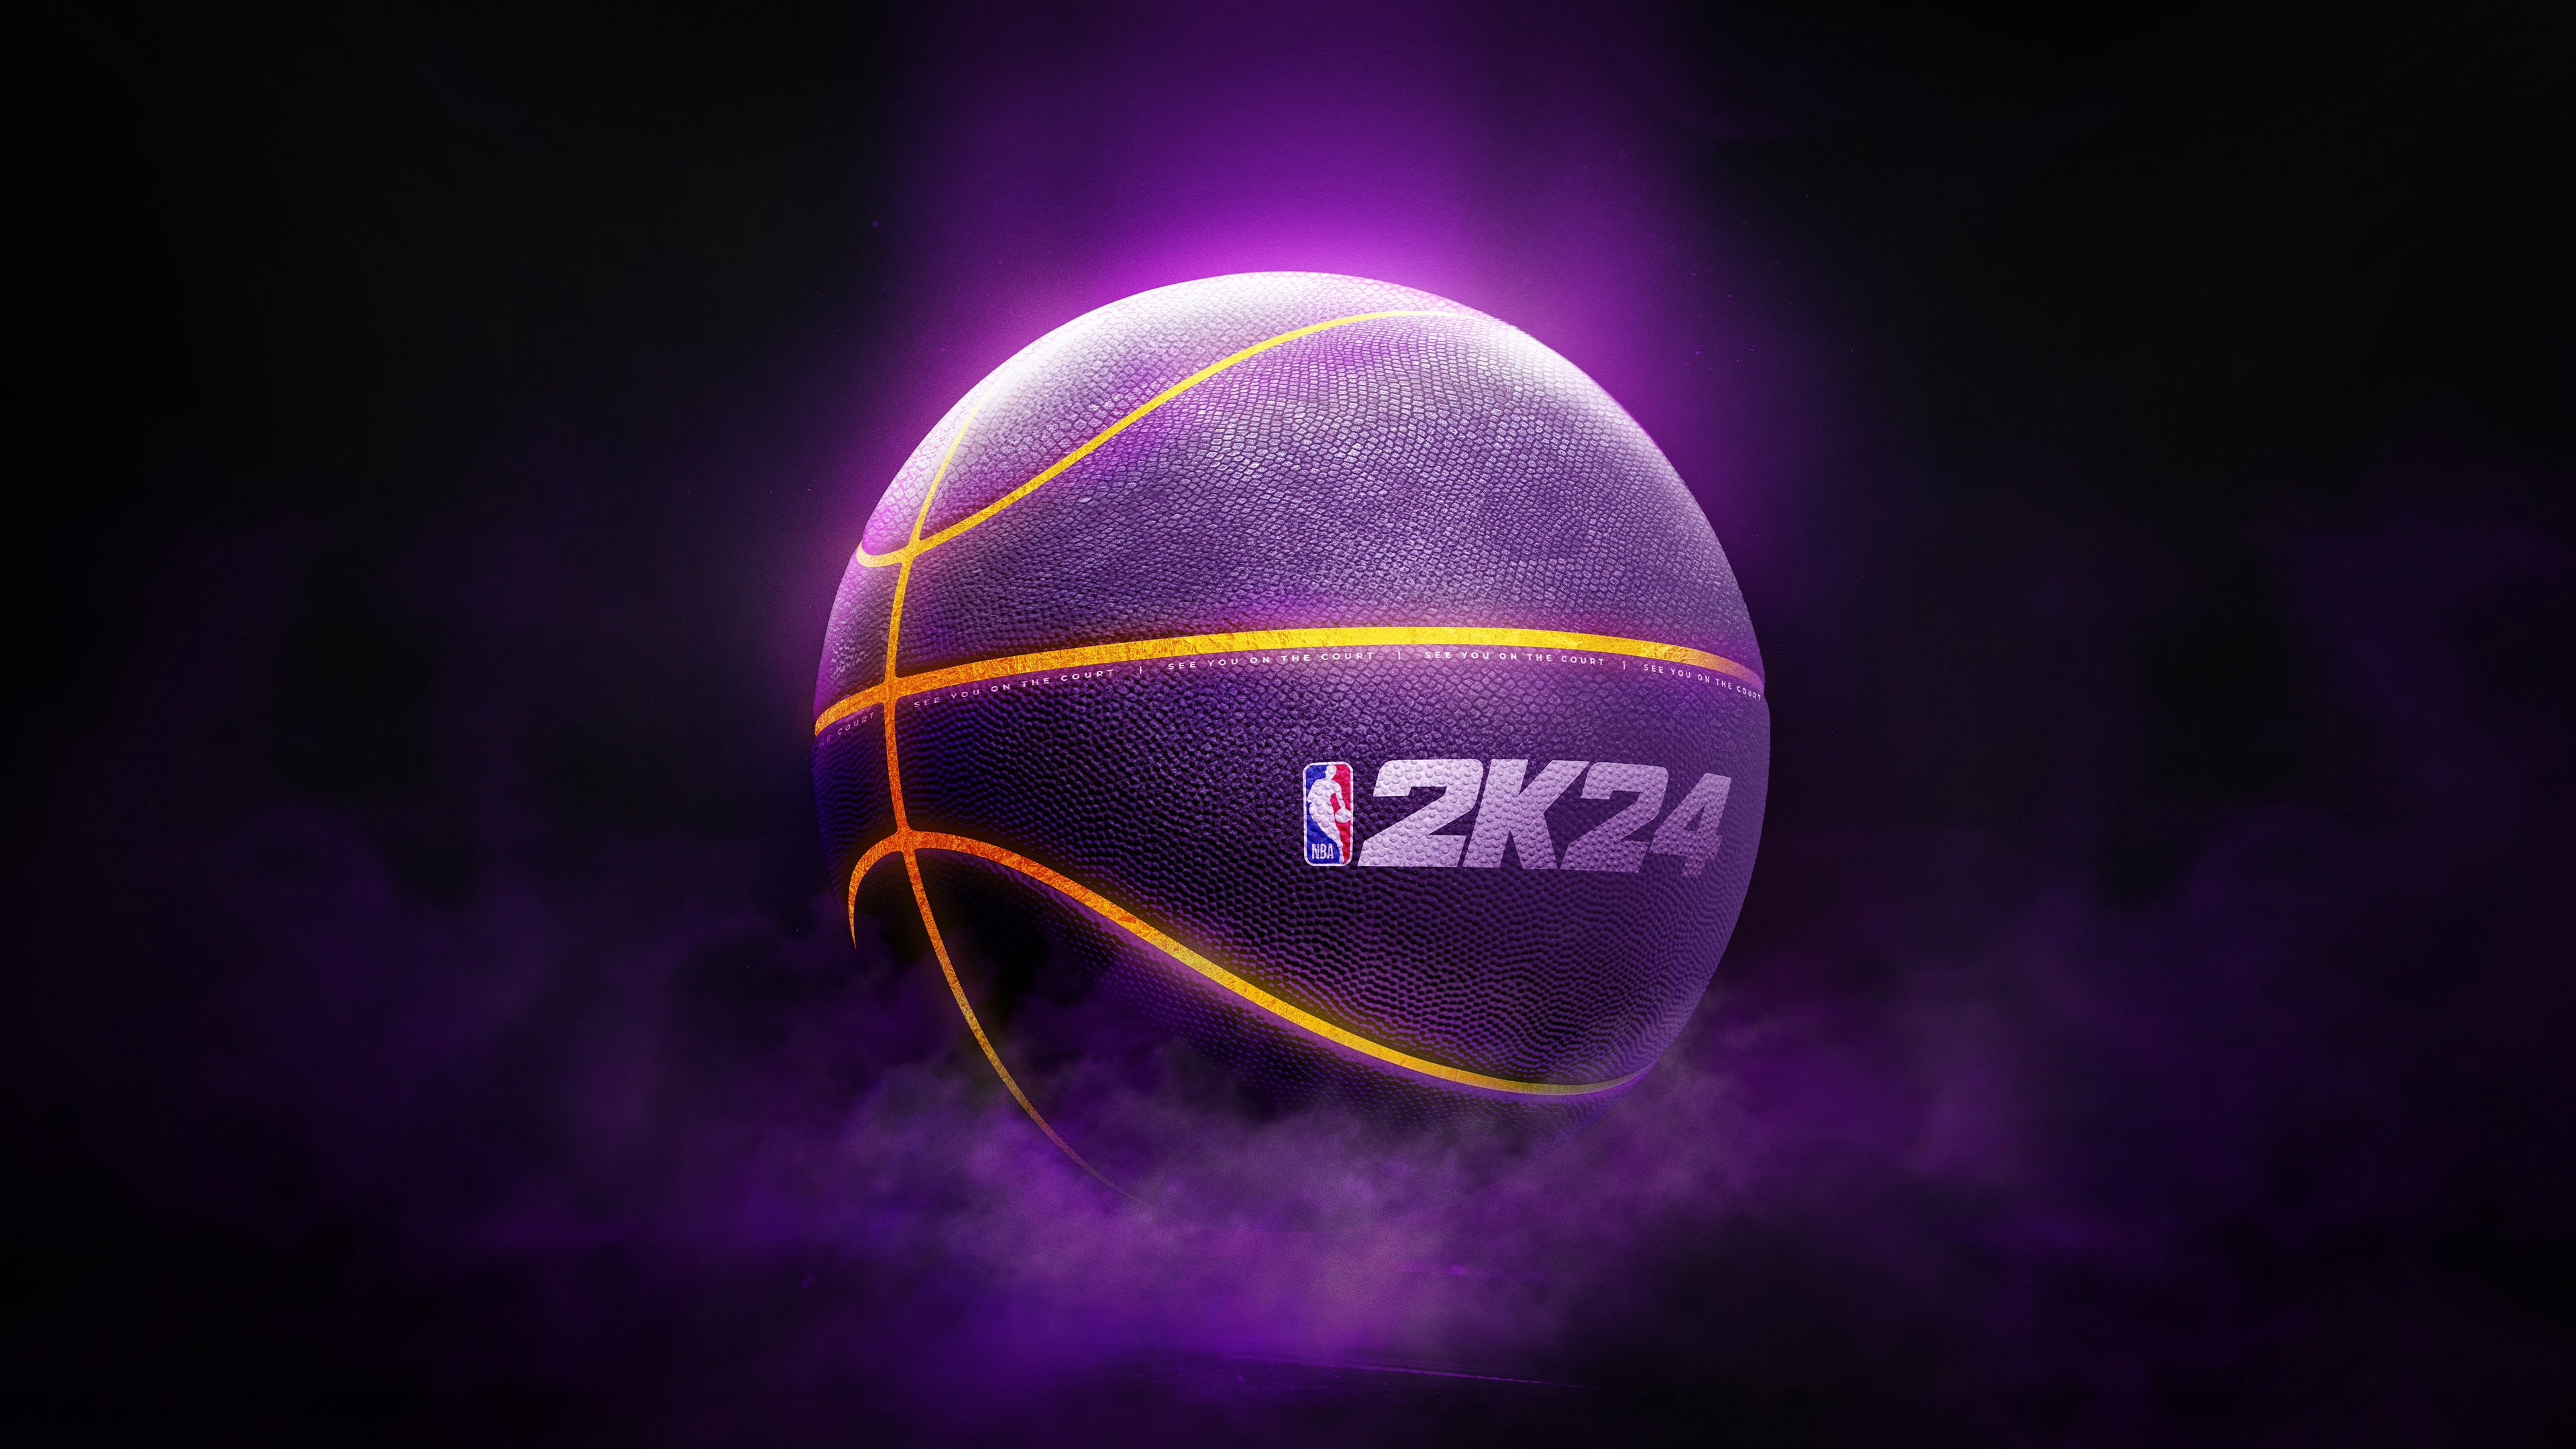 NBA 2K24 Edition Baller